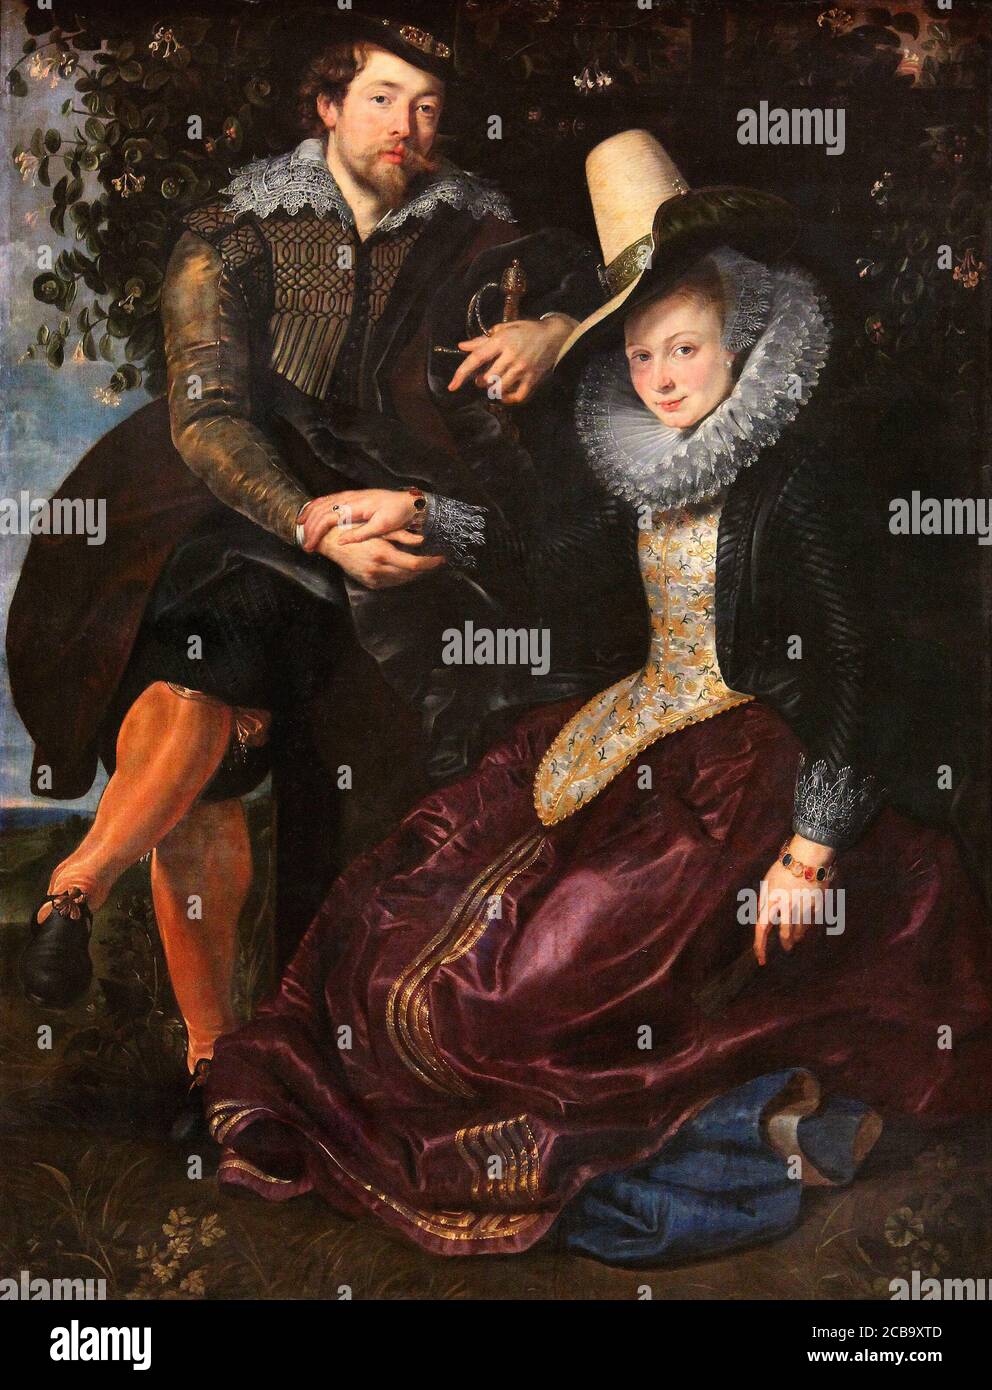 Rubens et Isabella Brandt par Peter Paul Rubens 1609. Musée Alte Pinakothek à Munich, Allemagne Banque D'Images